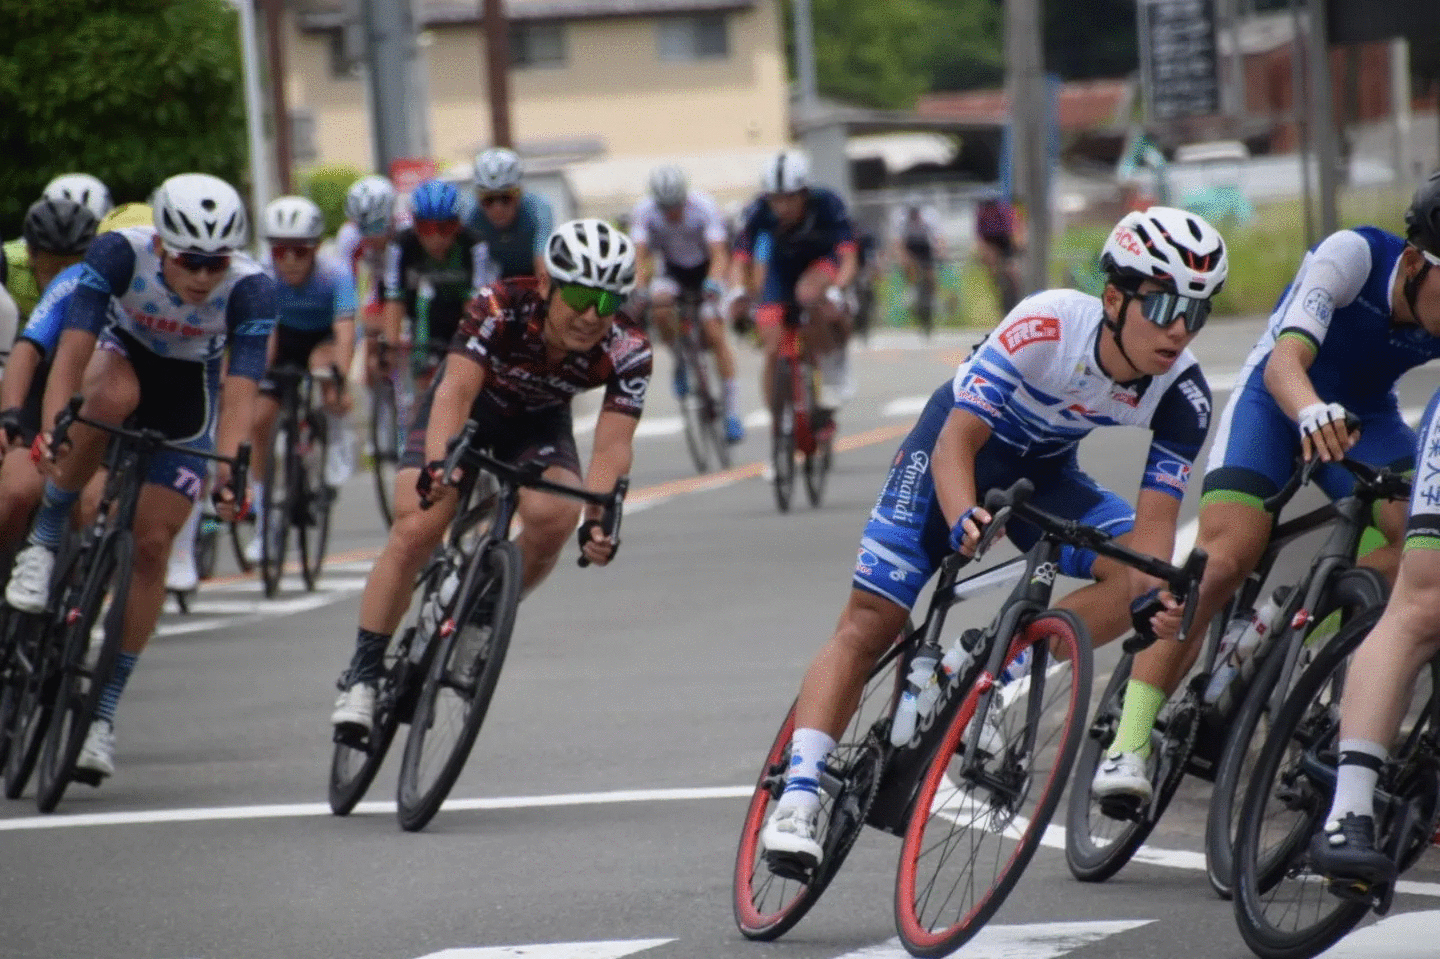 5/27-28 京都美山サイクルロードレース 向川選手によるレポート